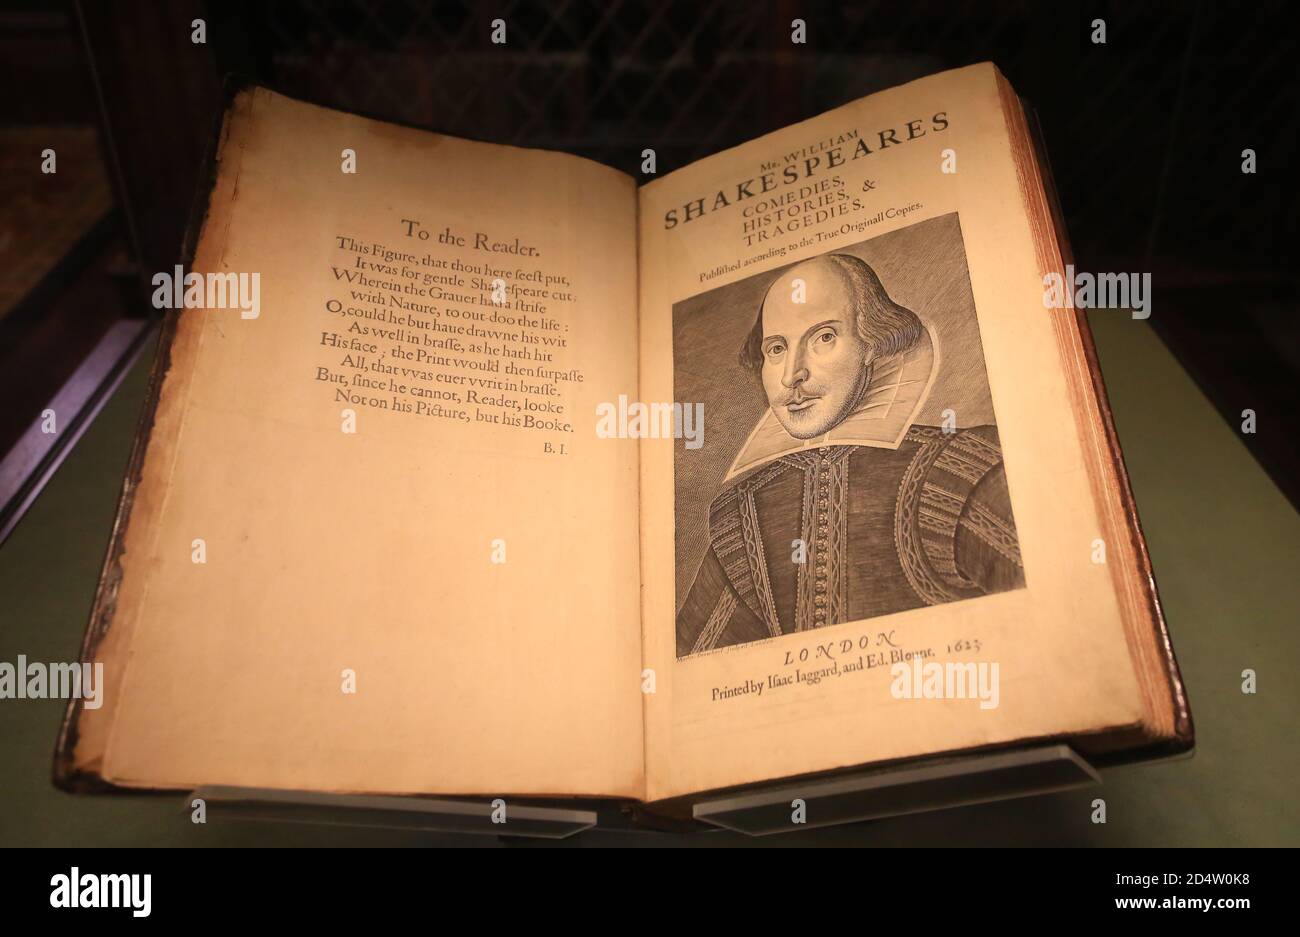 mr. william shakespeares Komödien, Geschichten und Tragödien. morgan Bibliothek und Museum in New York Stockfoto